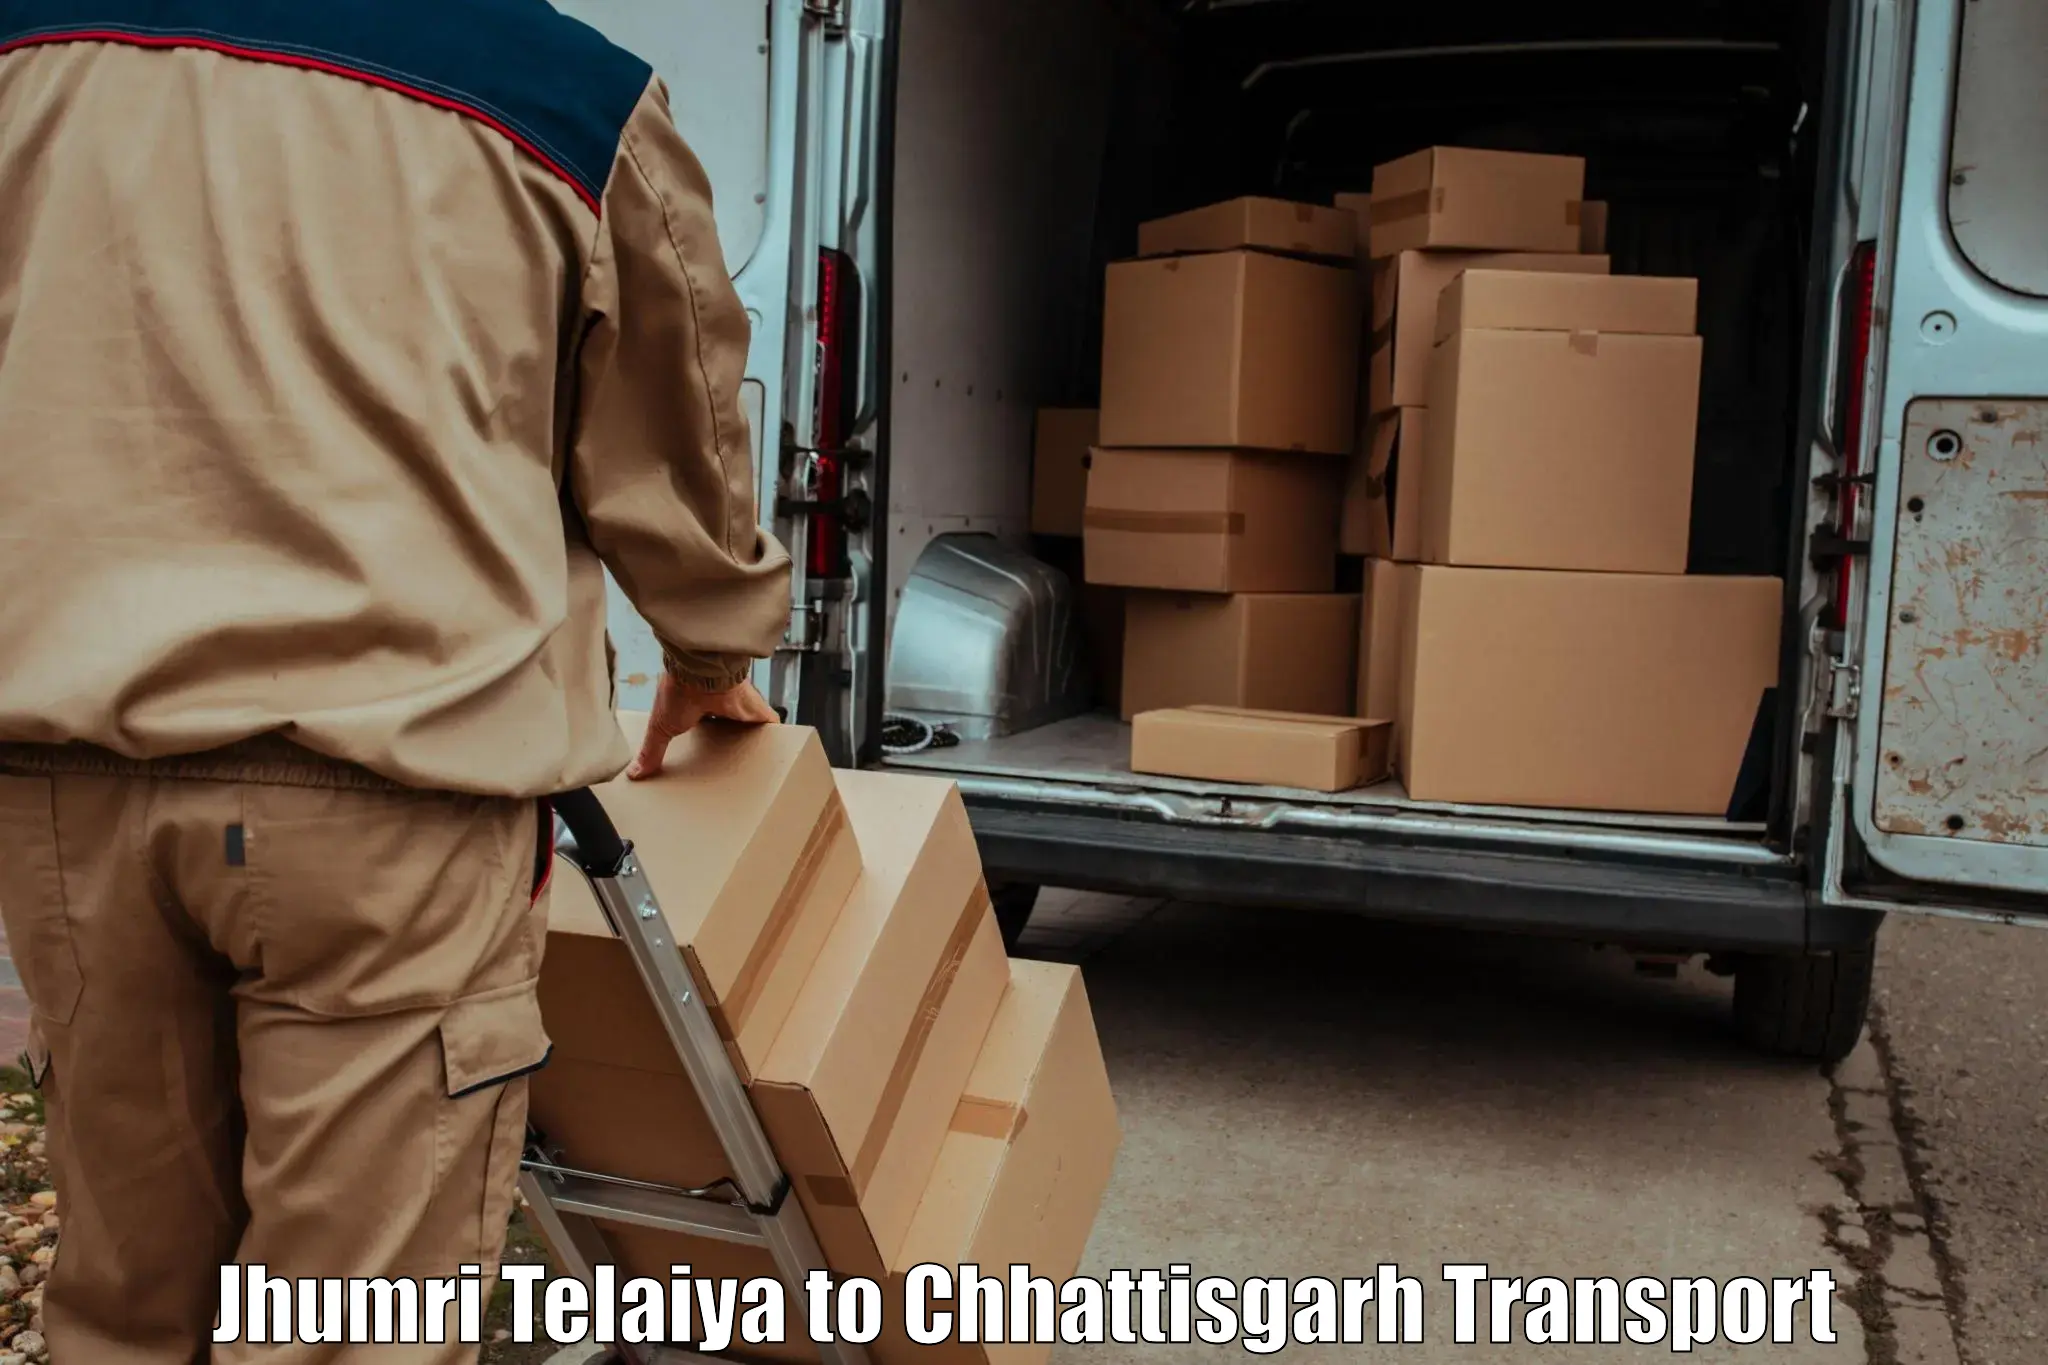 Furniture transport service Jhumri Telaiya to Berla